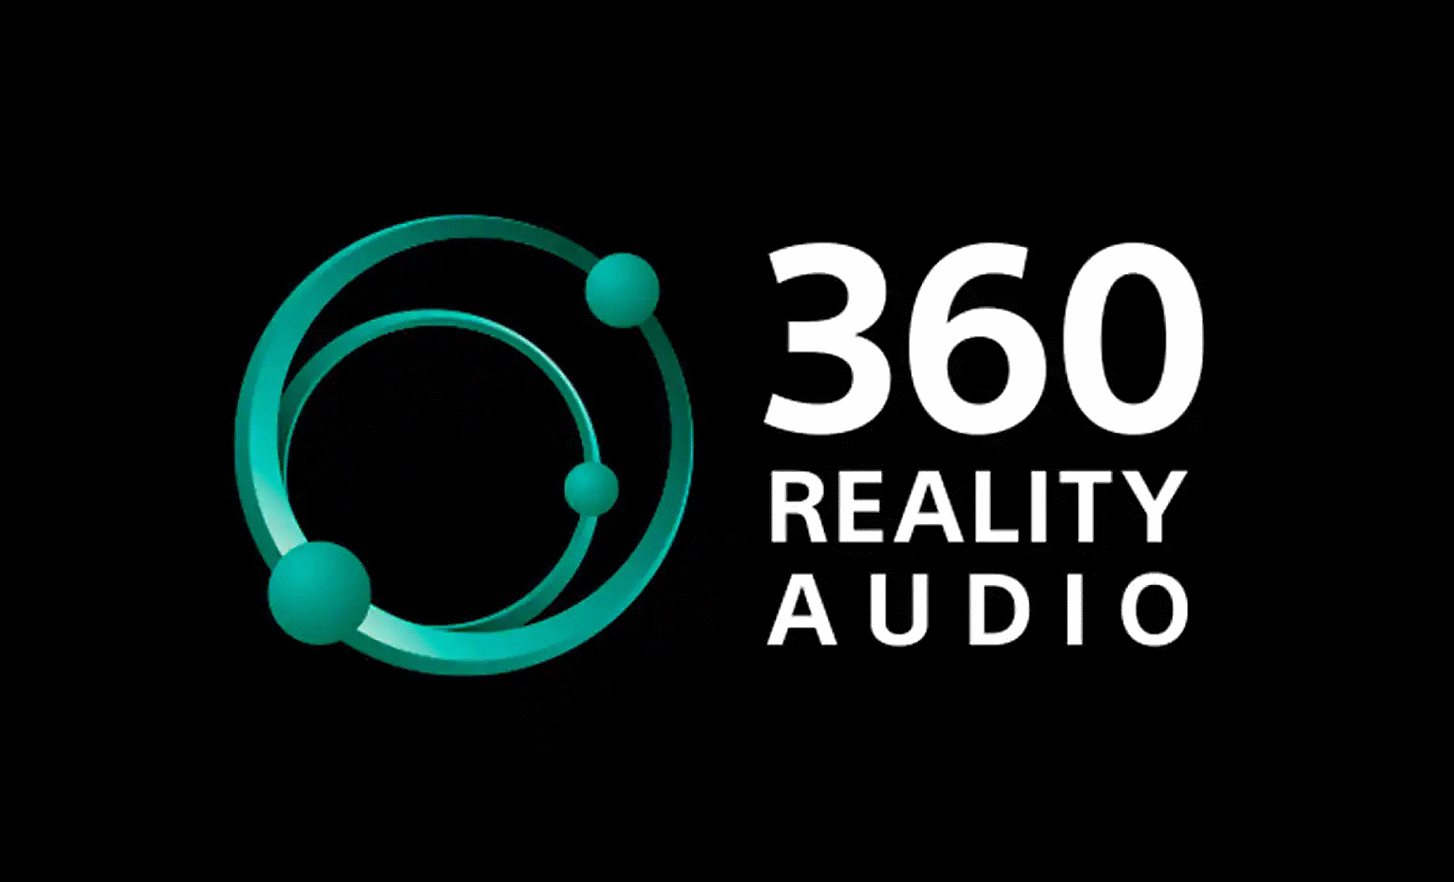 黑色背景中的 360 Reality Audio 標誌